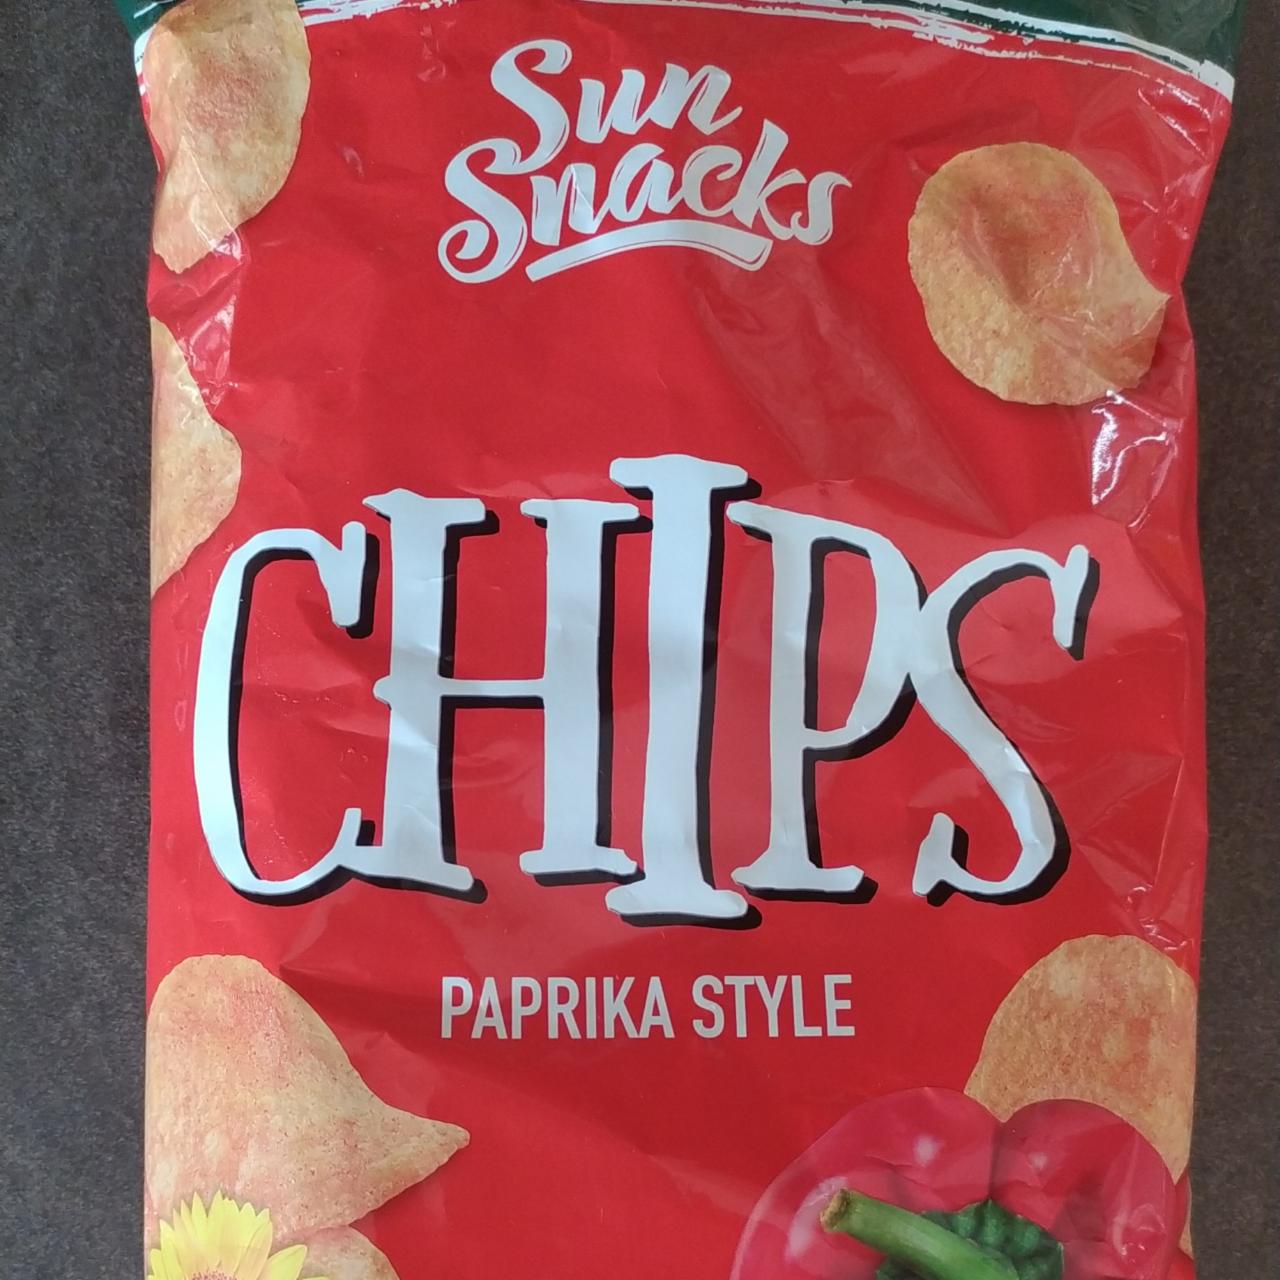 Fotografie - Chips Paprika style Sun Snacks